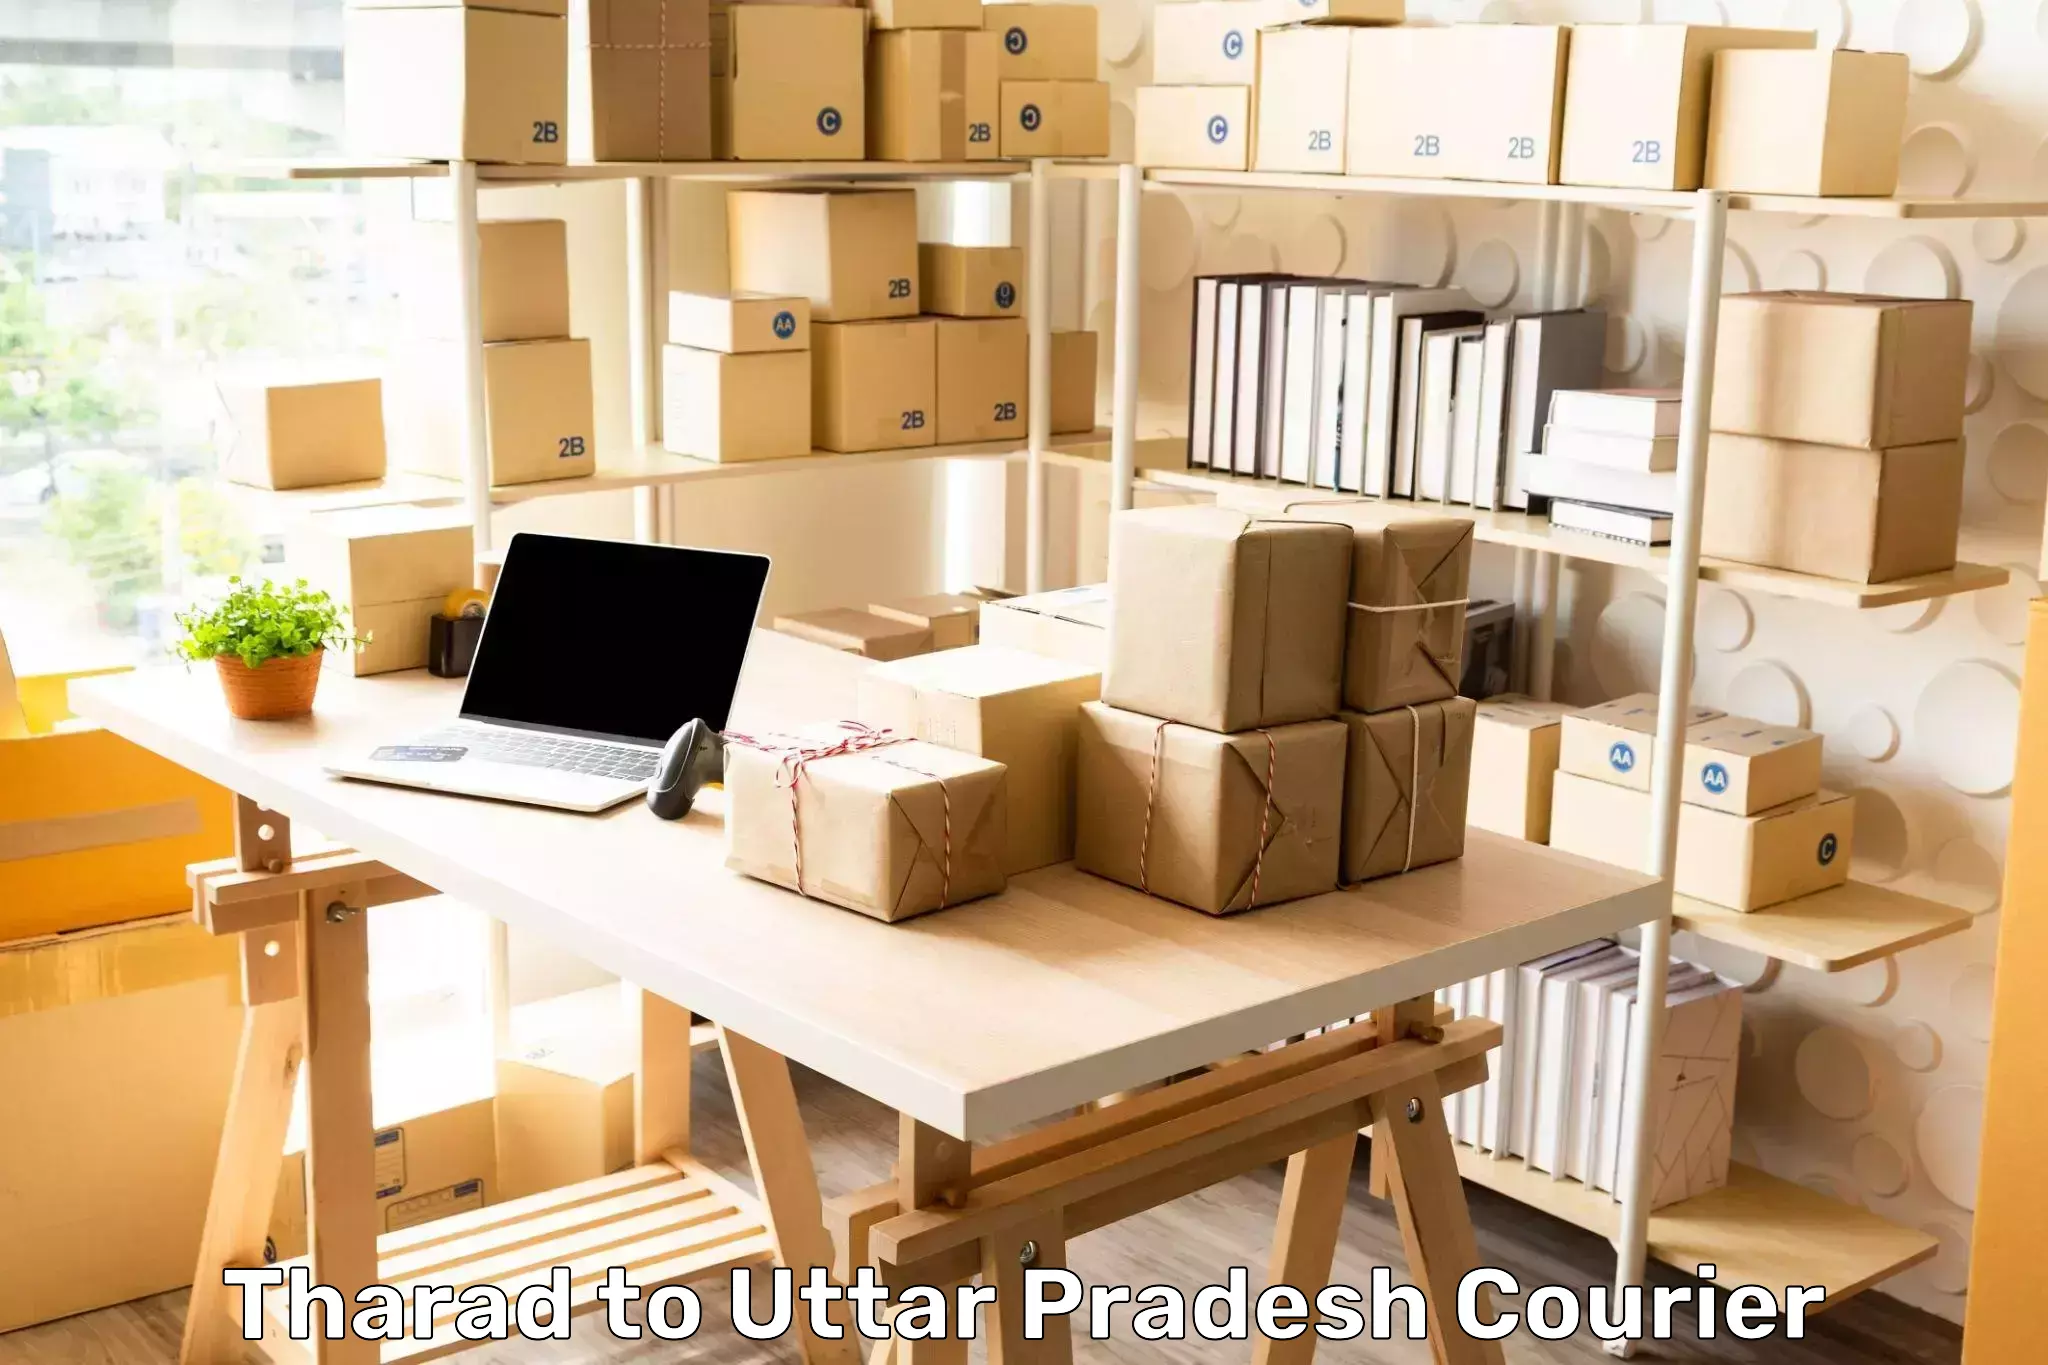 Advanced parcel tracking Tharad to Uttar Pradesh